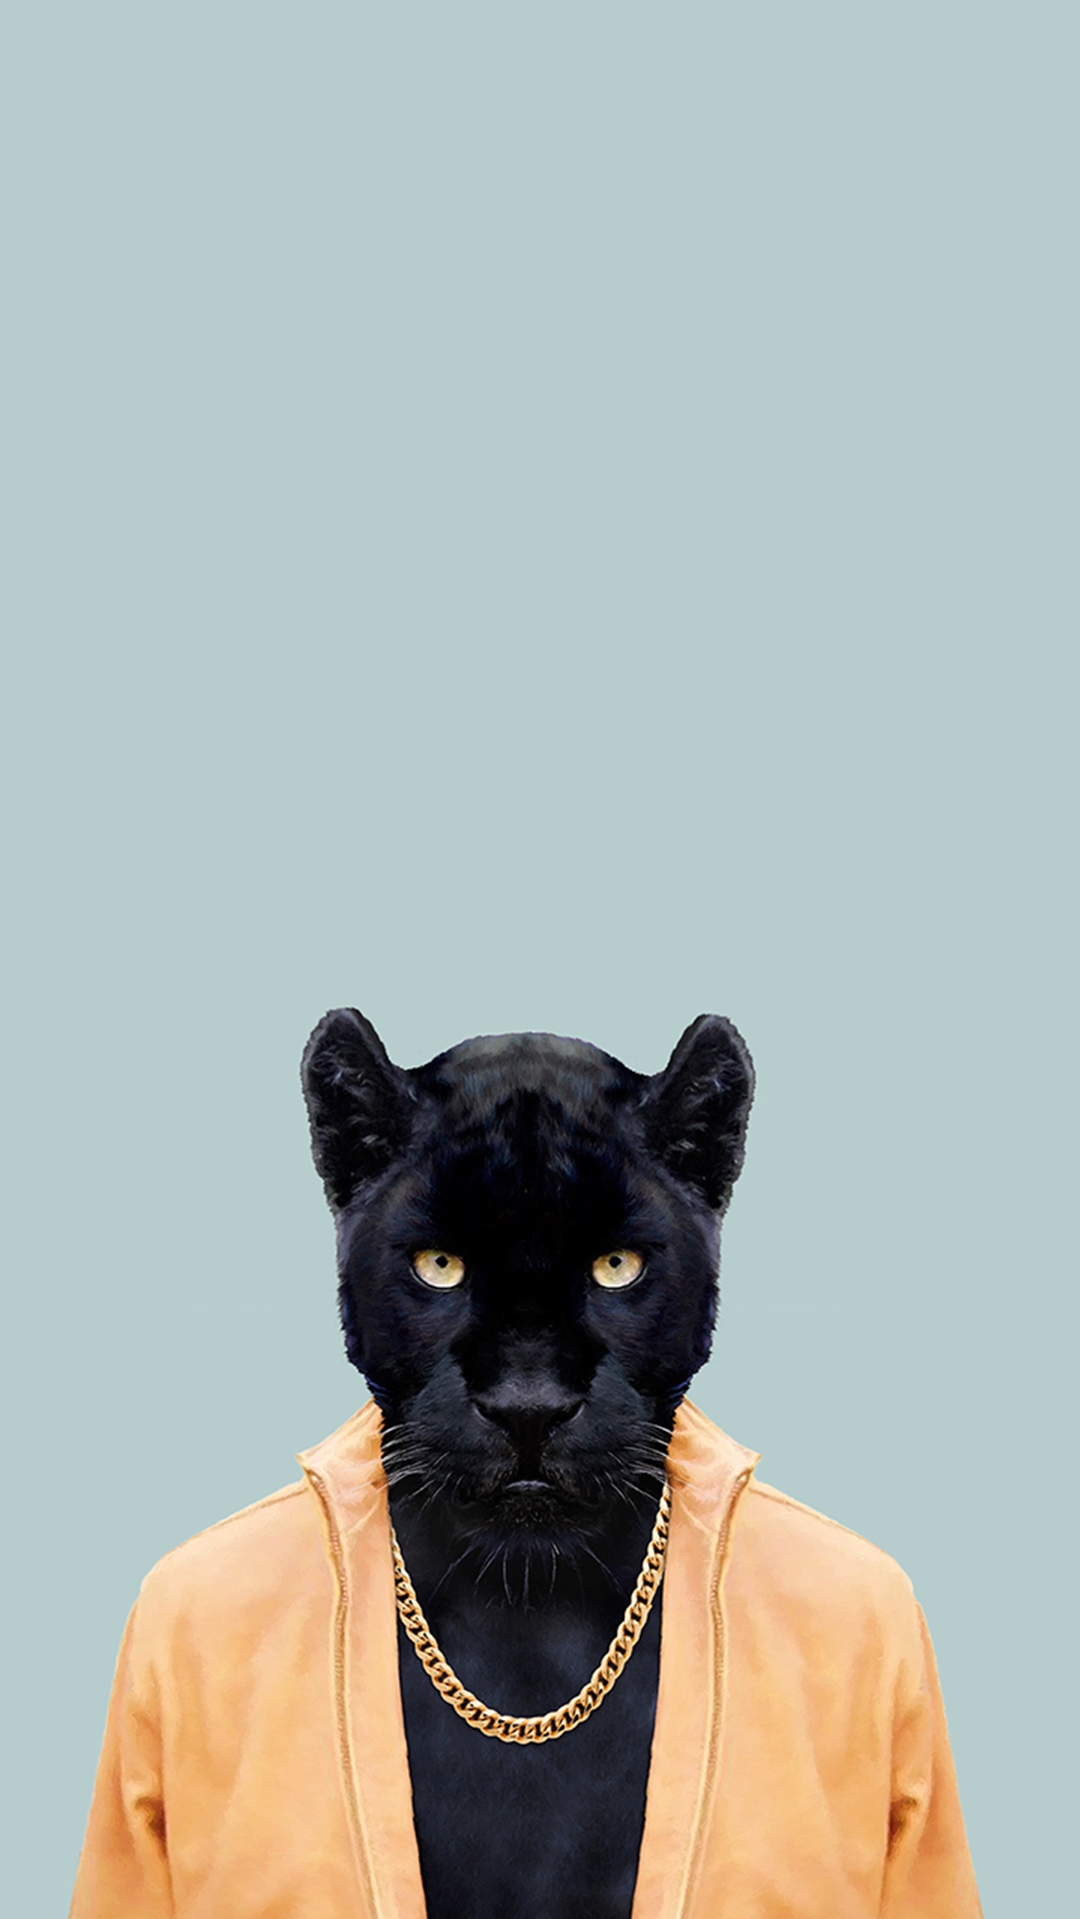 Wallpaper Black Panther Animal Wallpapers